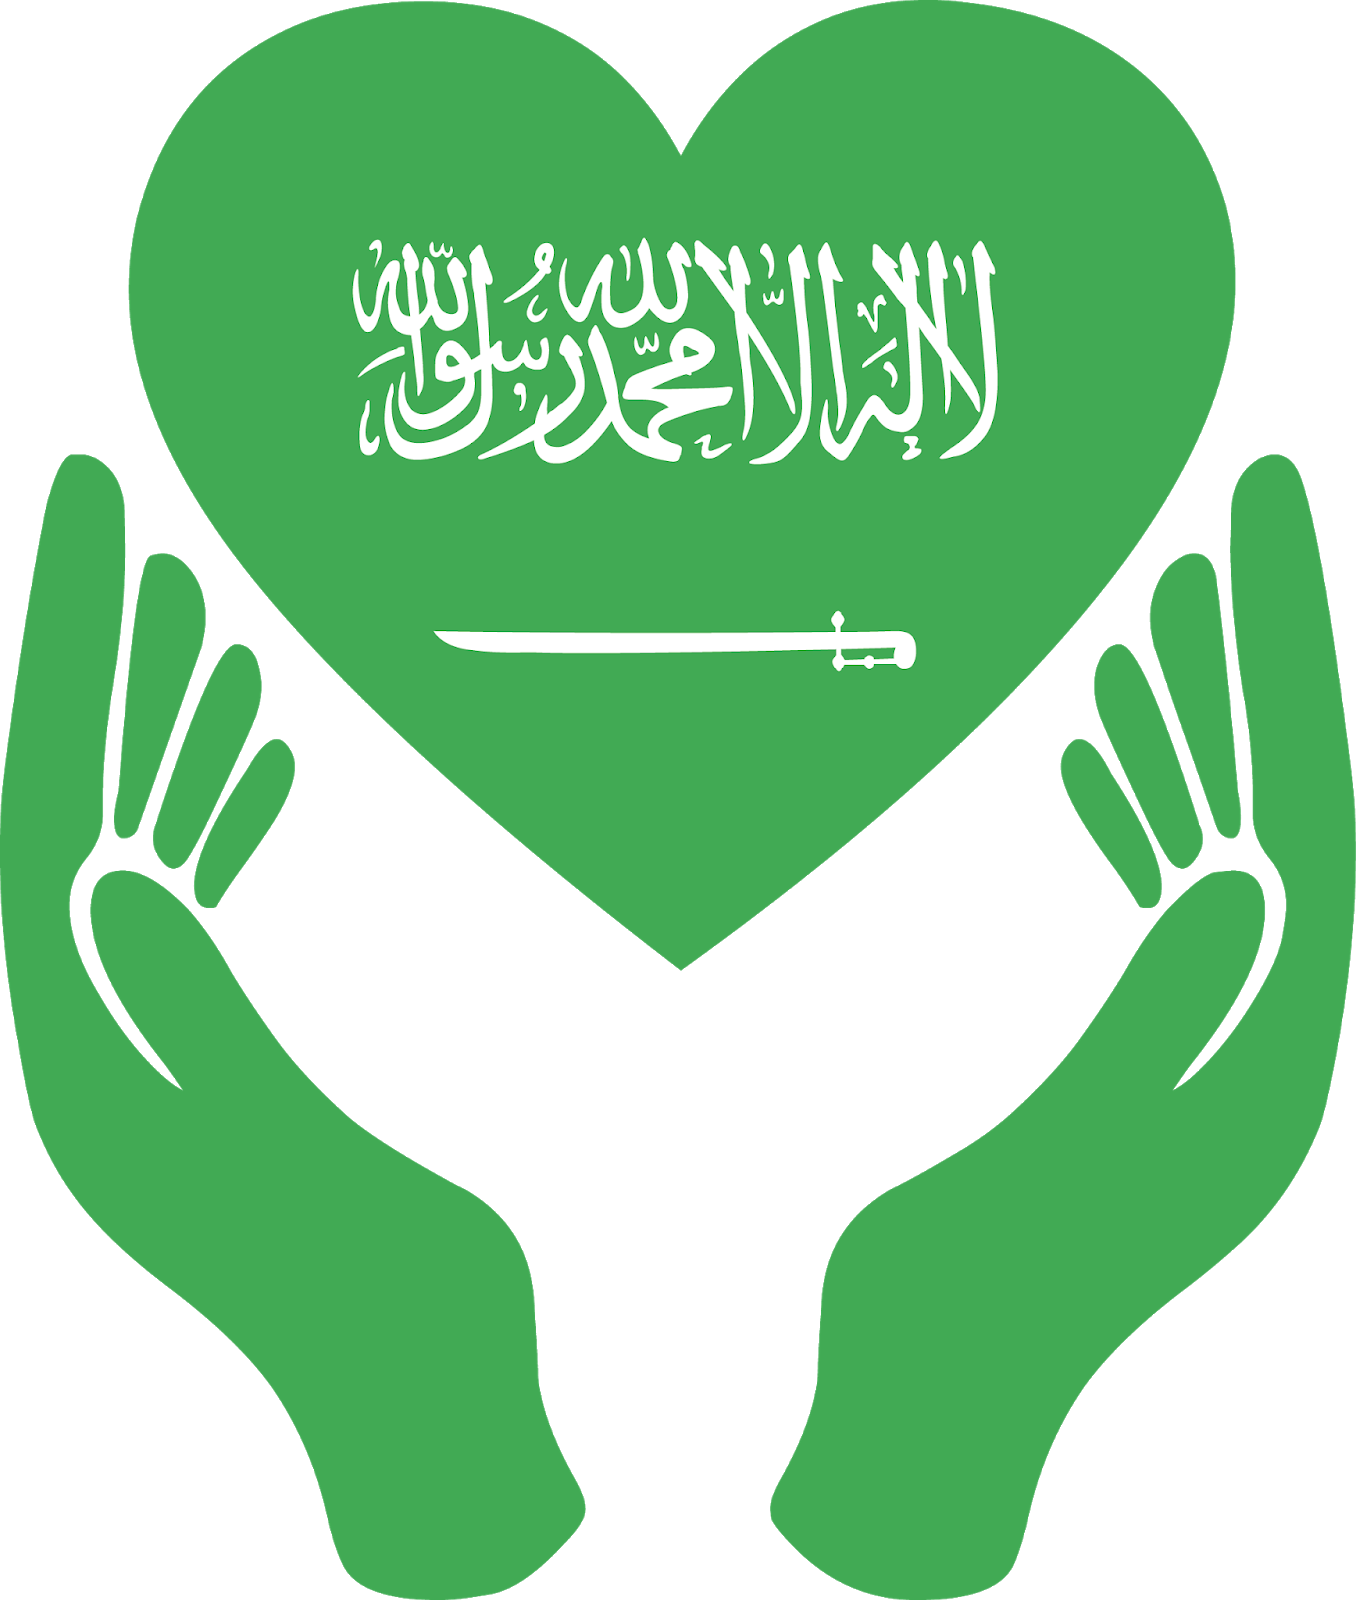 ماذا تعرف عن علم المملكة العربية السعودية؟ سيدي افضل موقع للرجل العربي